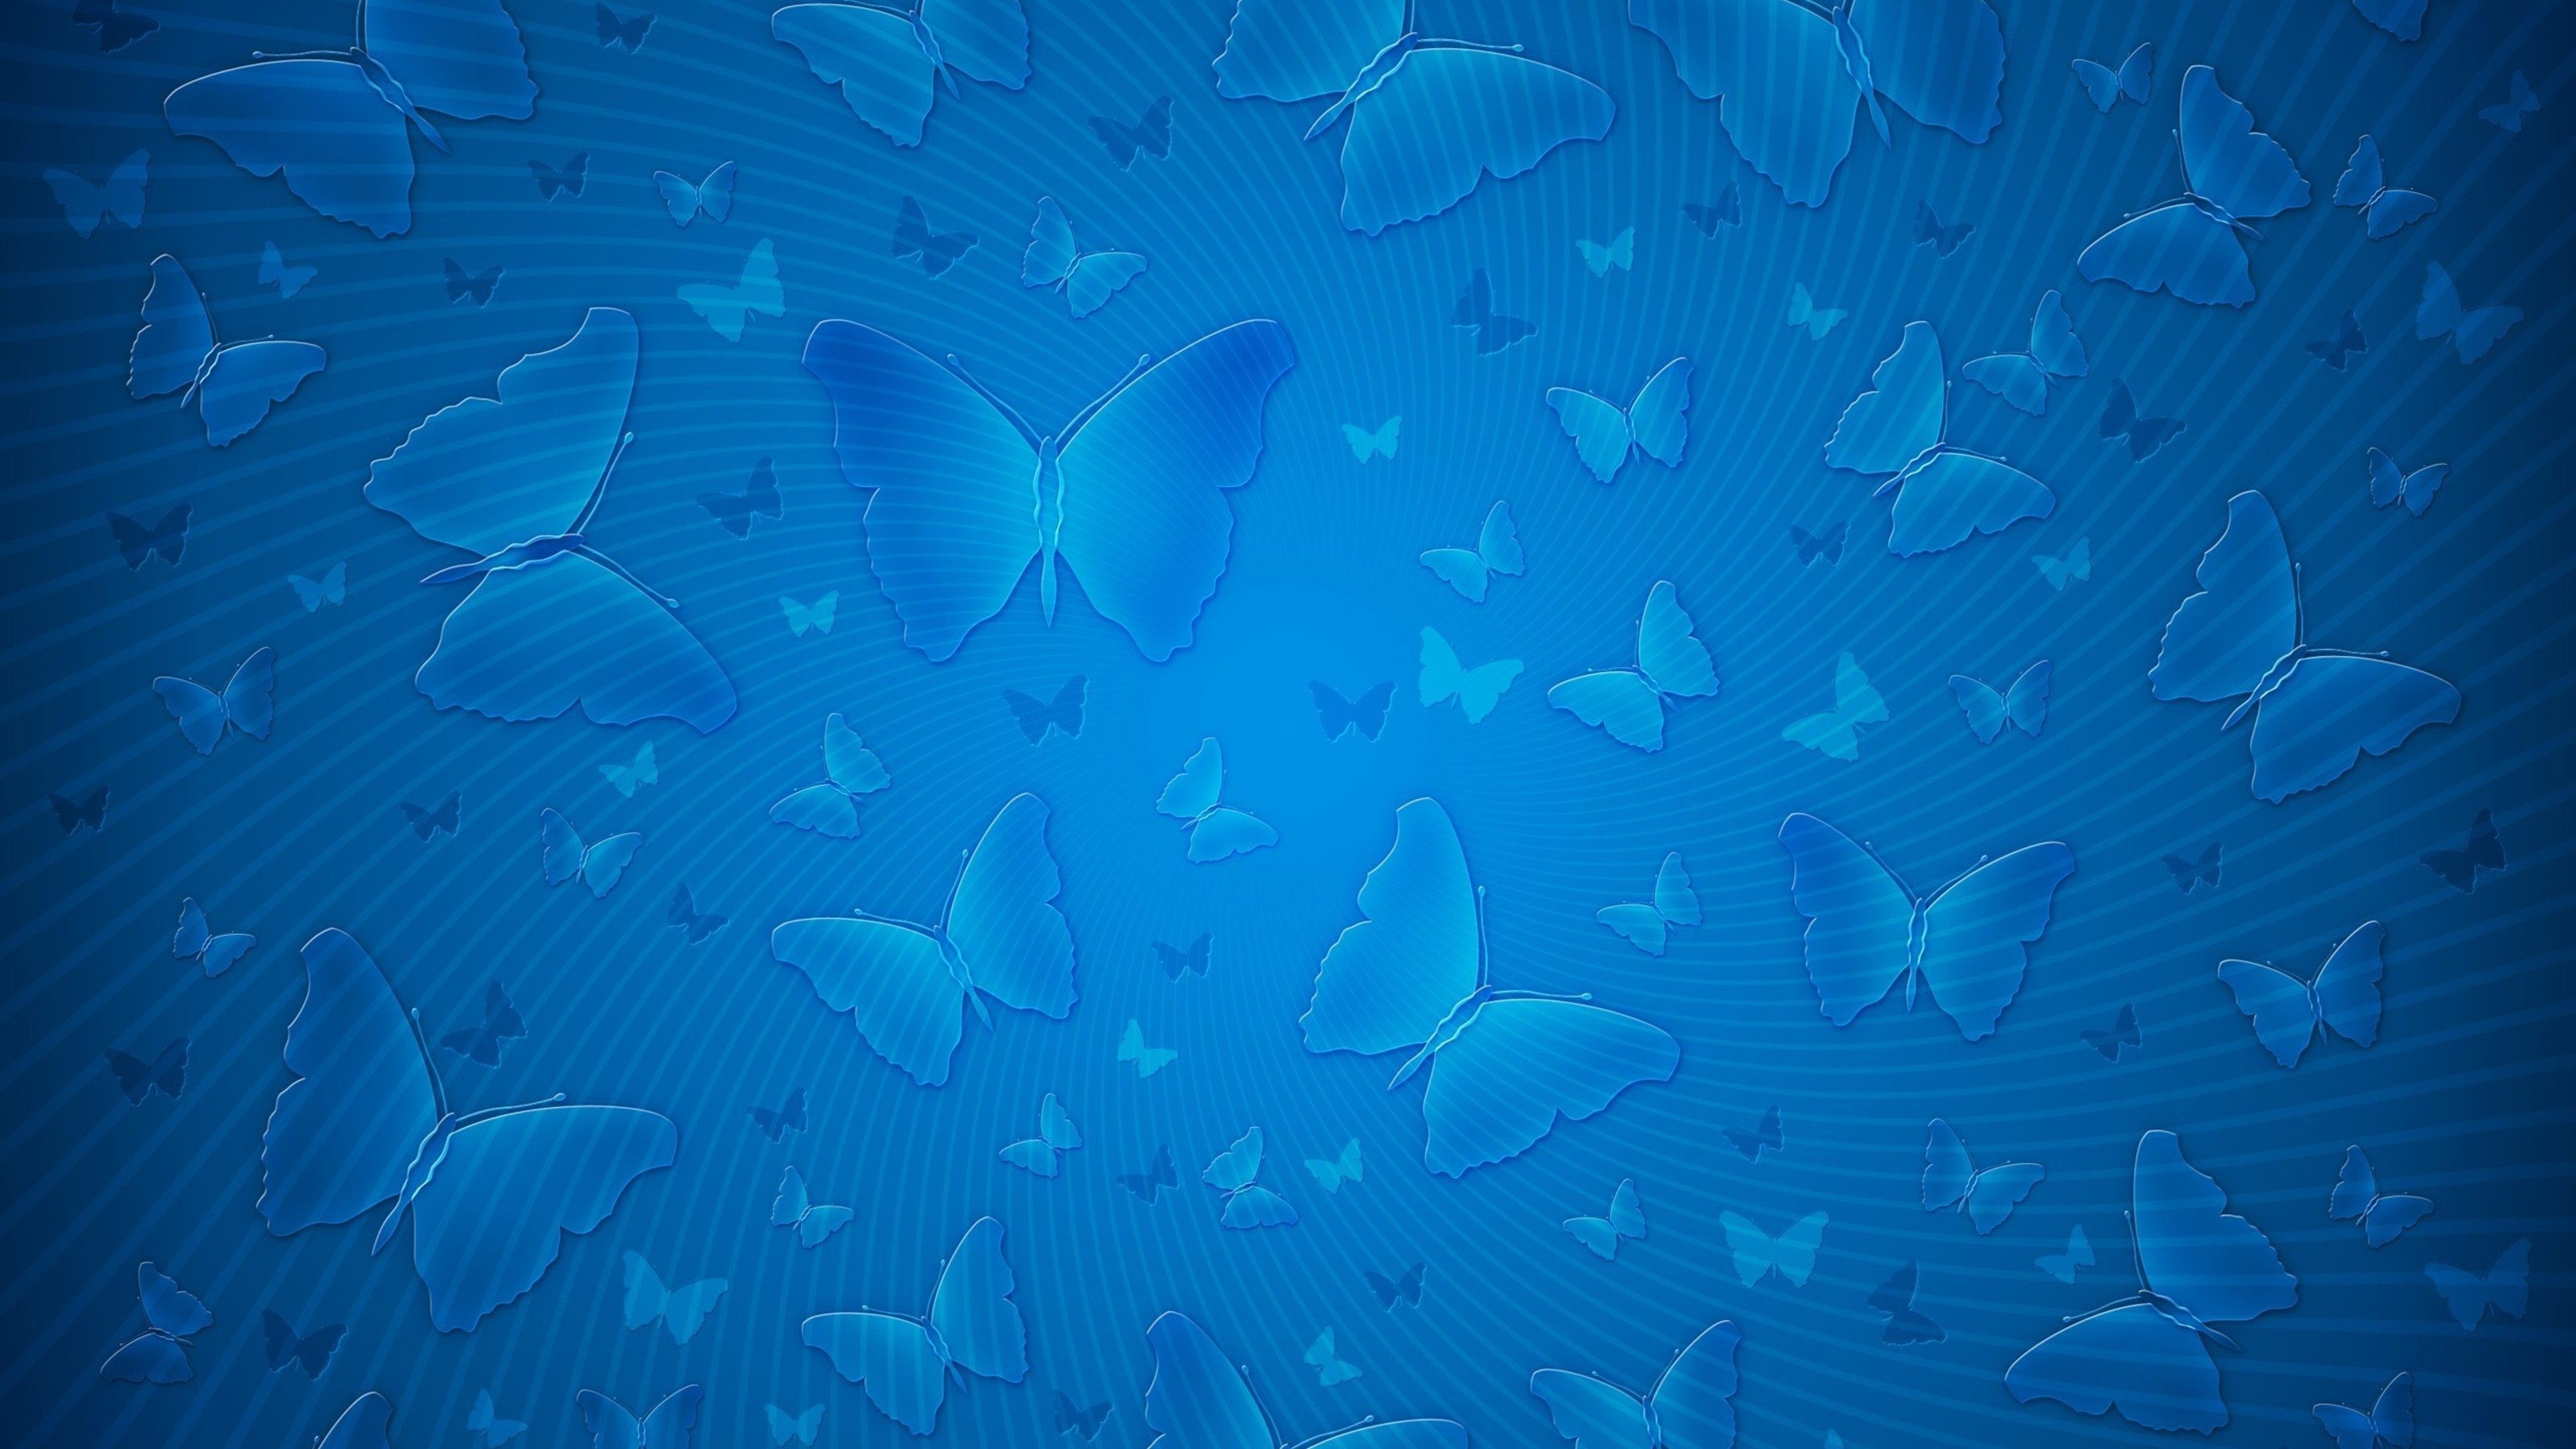 3840x2160 butterfly background blue pattern 4k ultra hd wallpaper